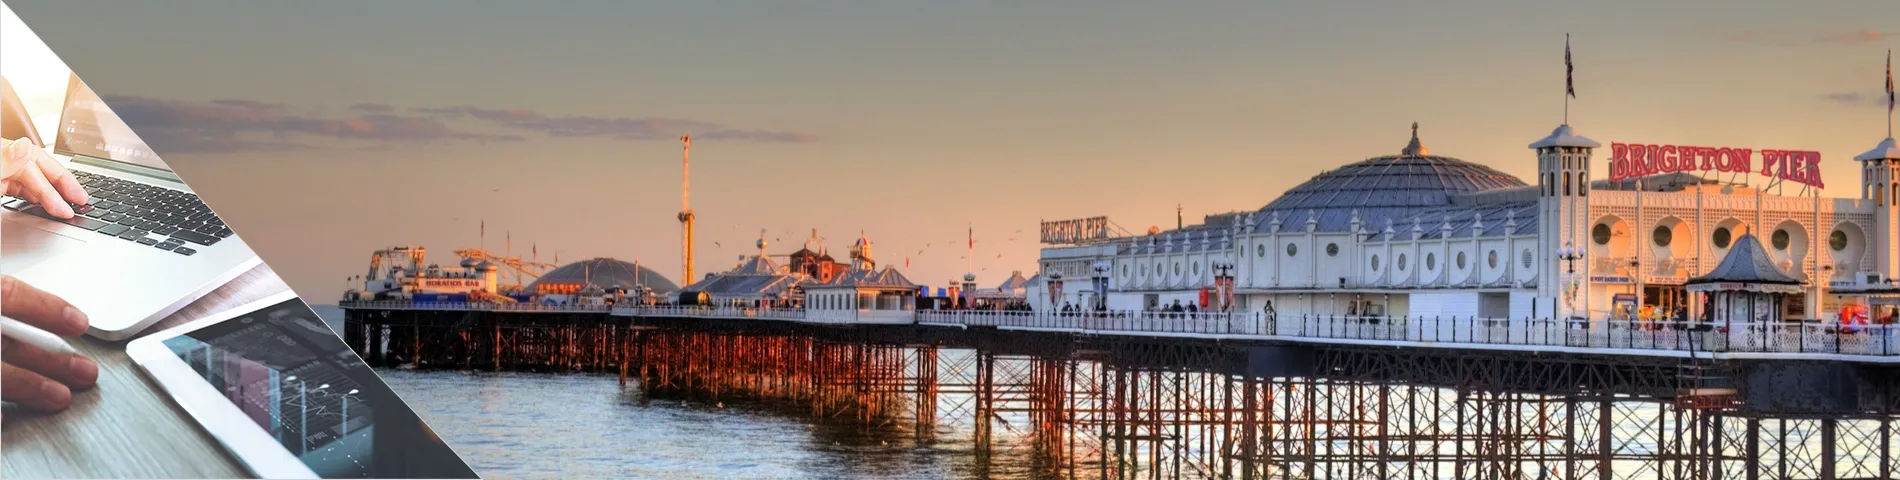 Brighton - Anglès i Mitjans digitals